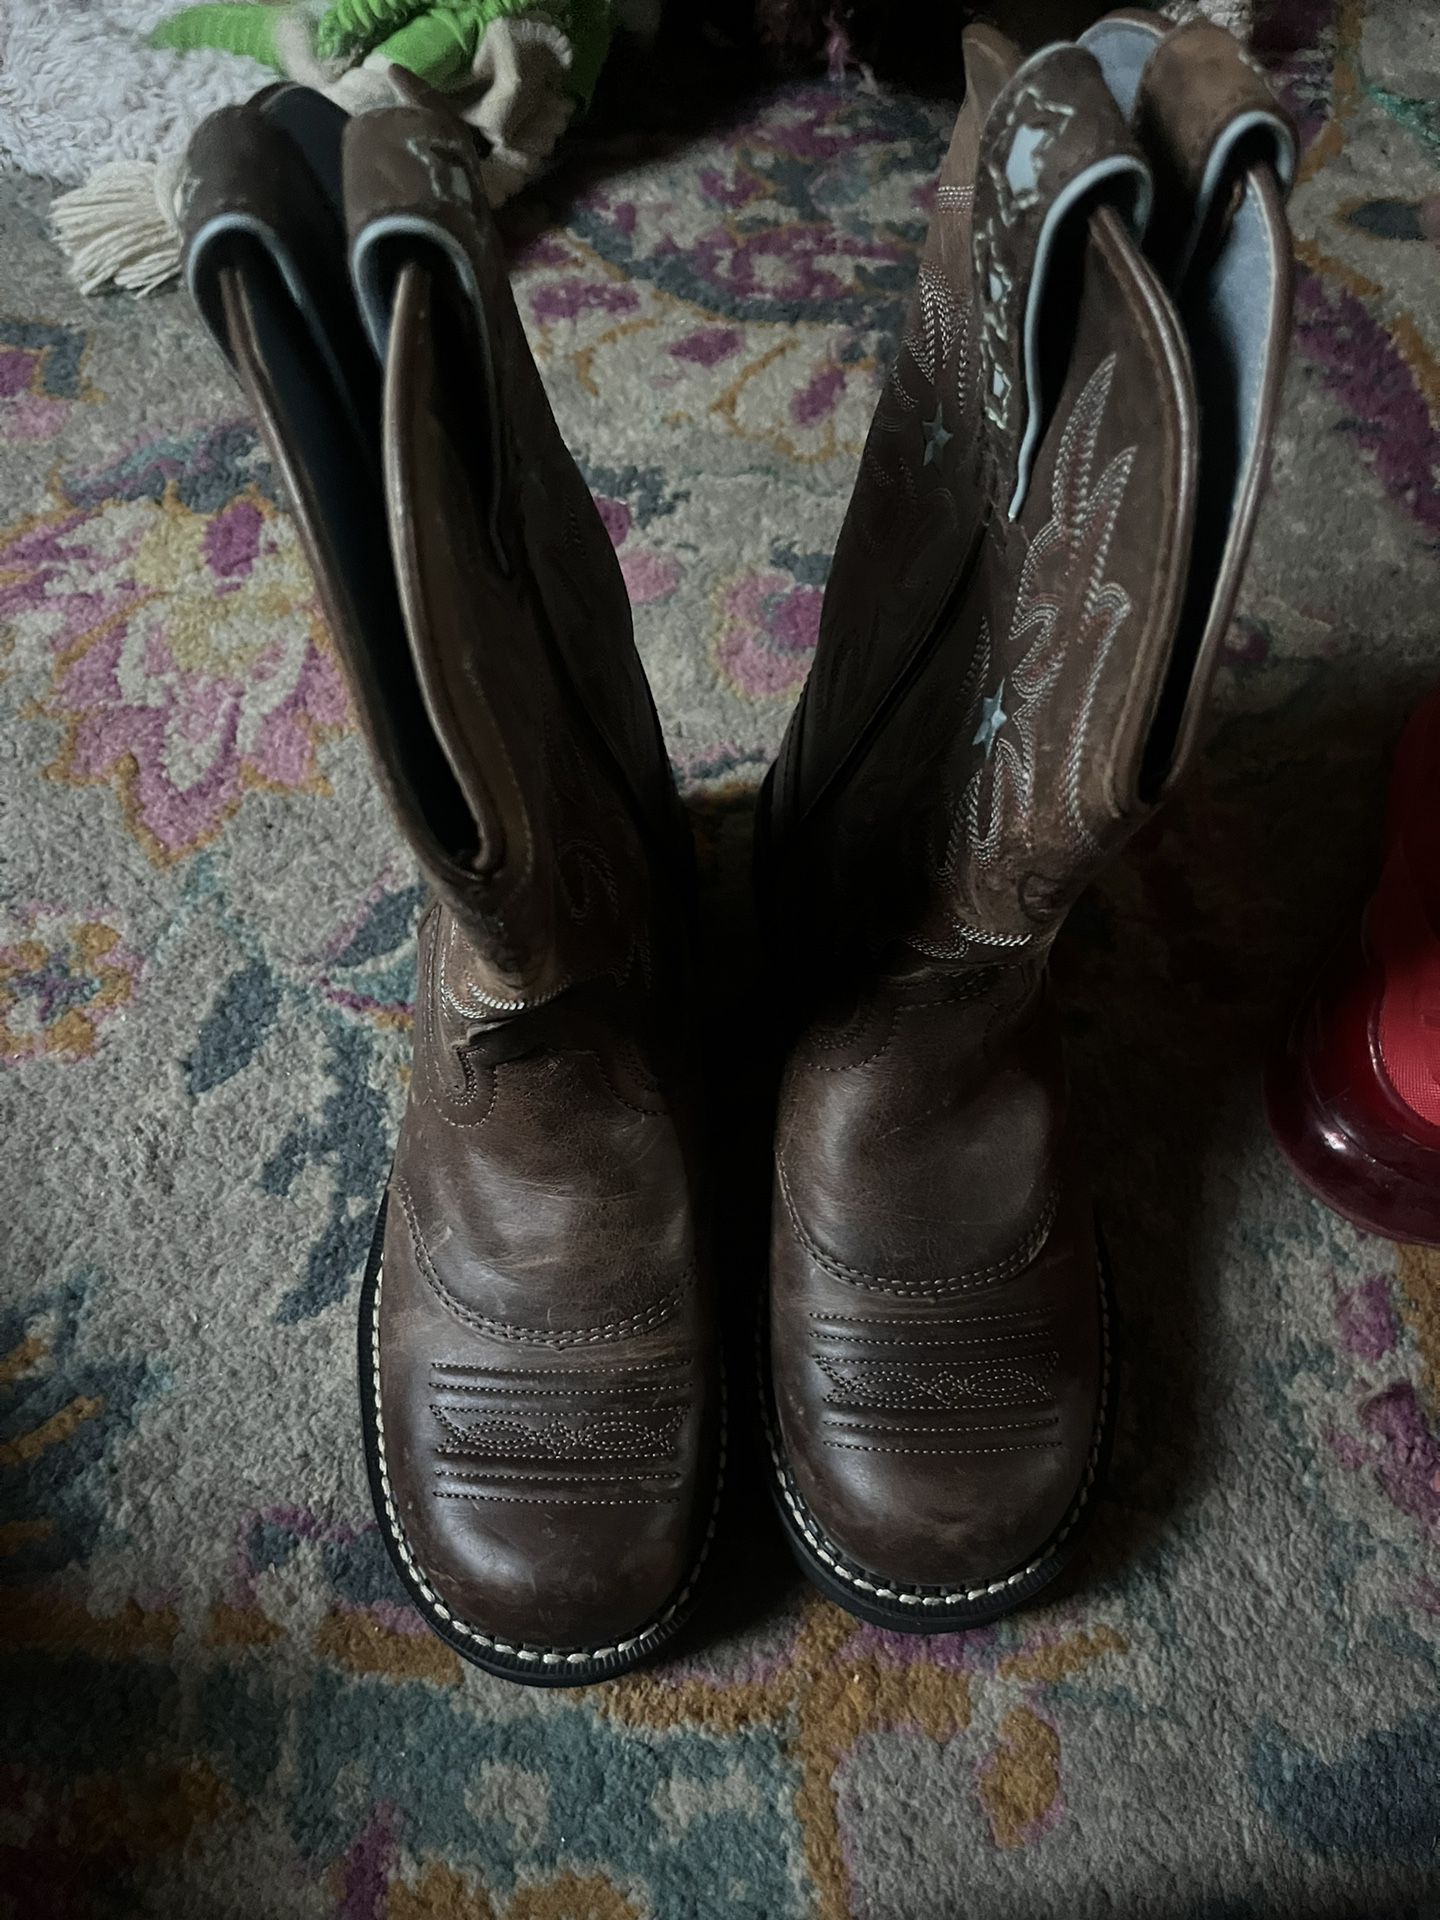 Women’s Ariat Boots 6.5